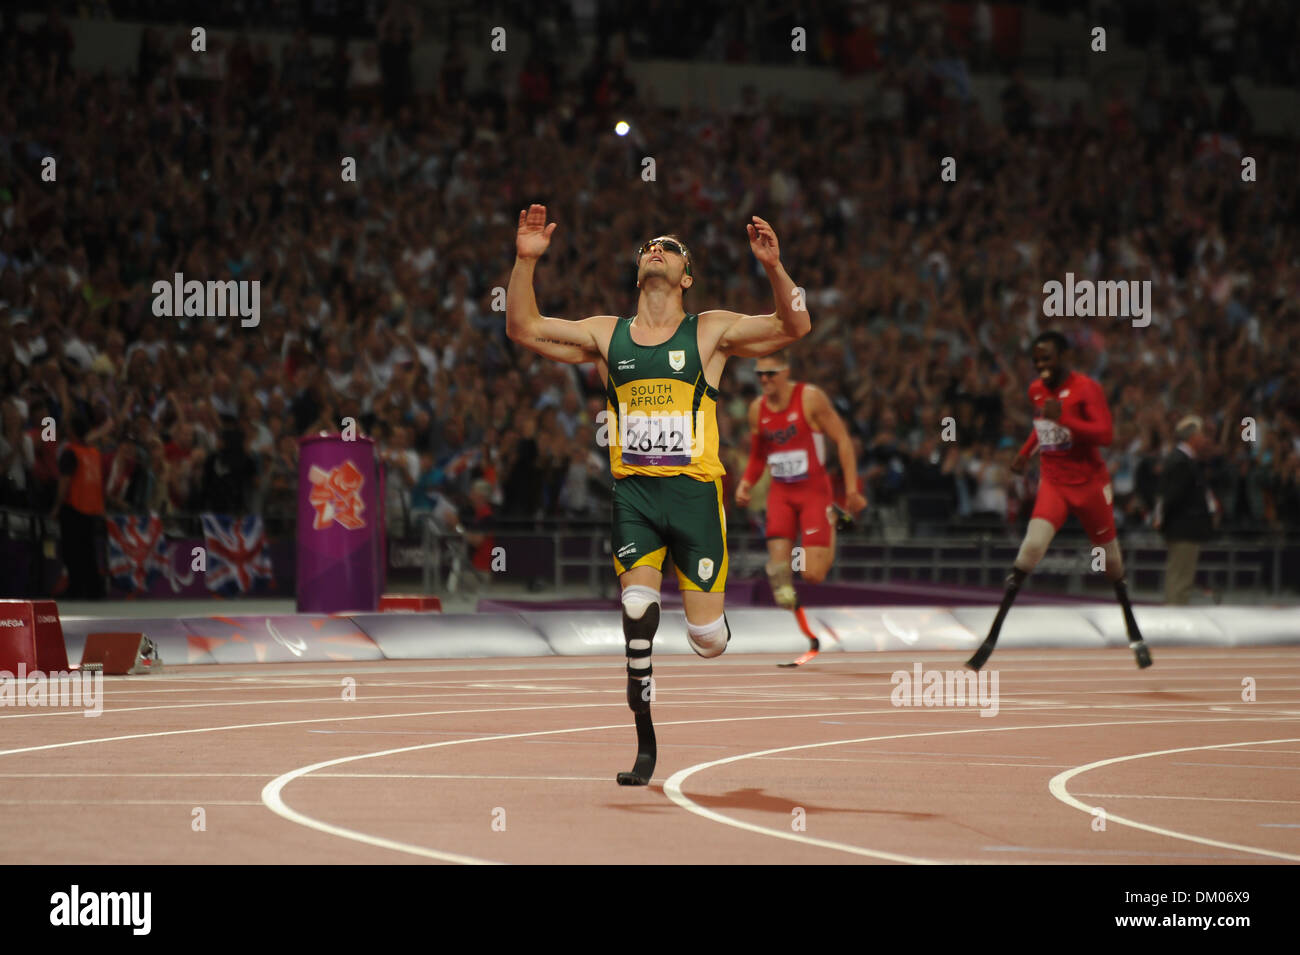 Oscar Pistorius (Afrique du Sud) remporte l'or men's 400m T44 dernière au stade Olympique Londres Angleterre - 08.09.12 Banque D'Images